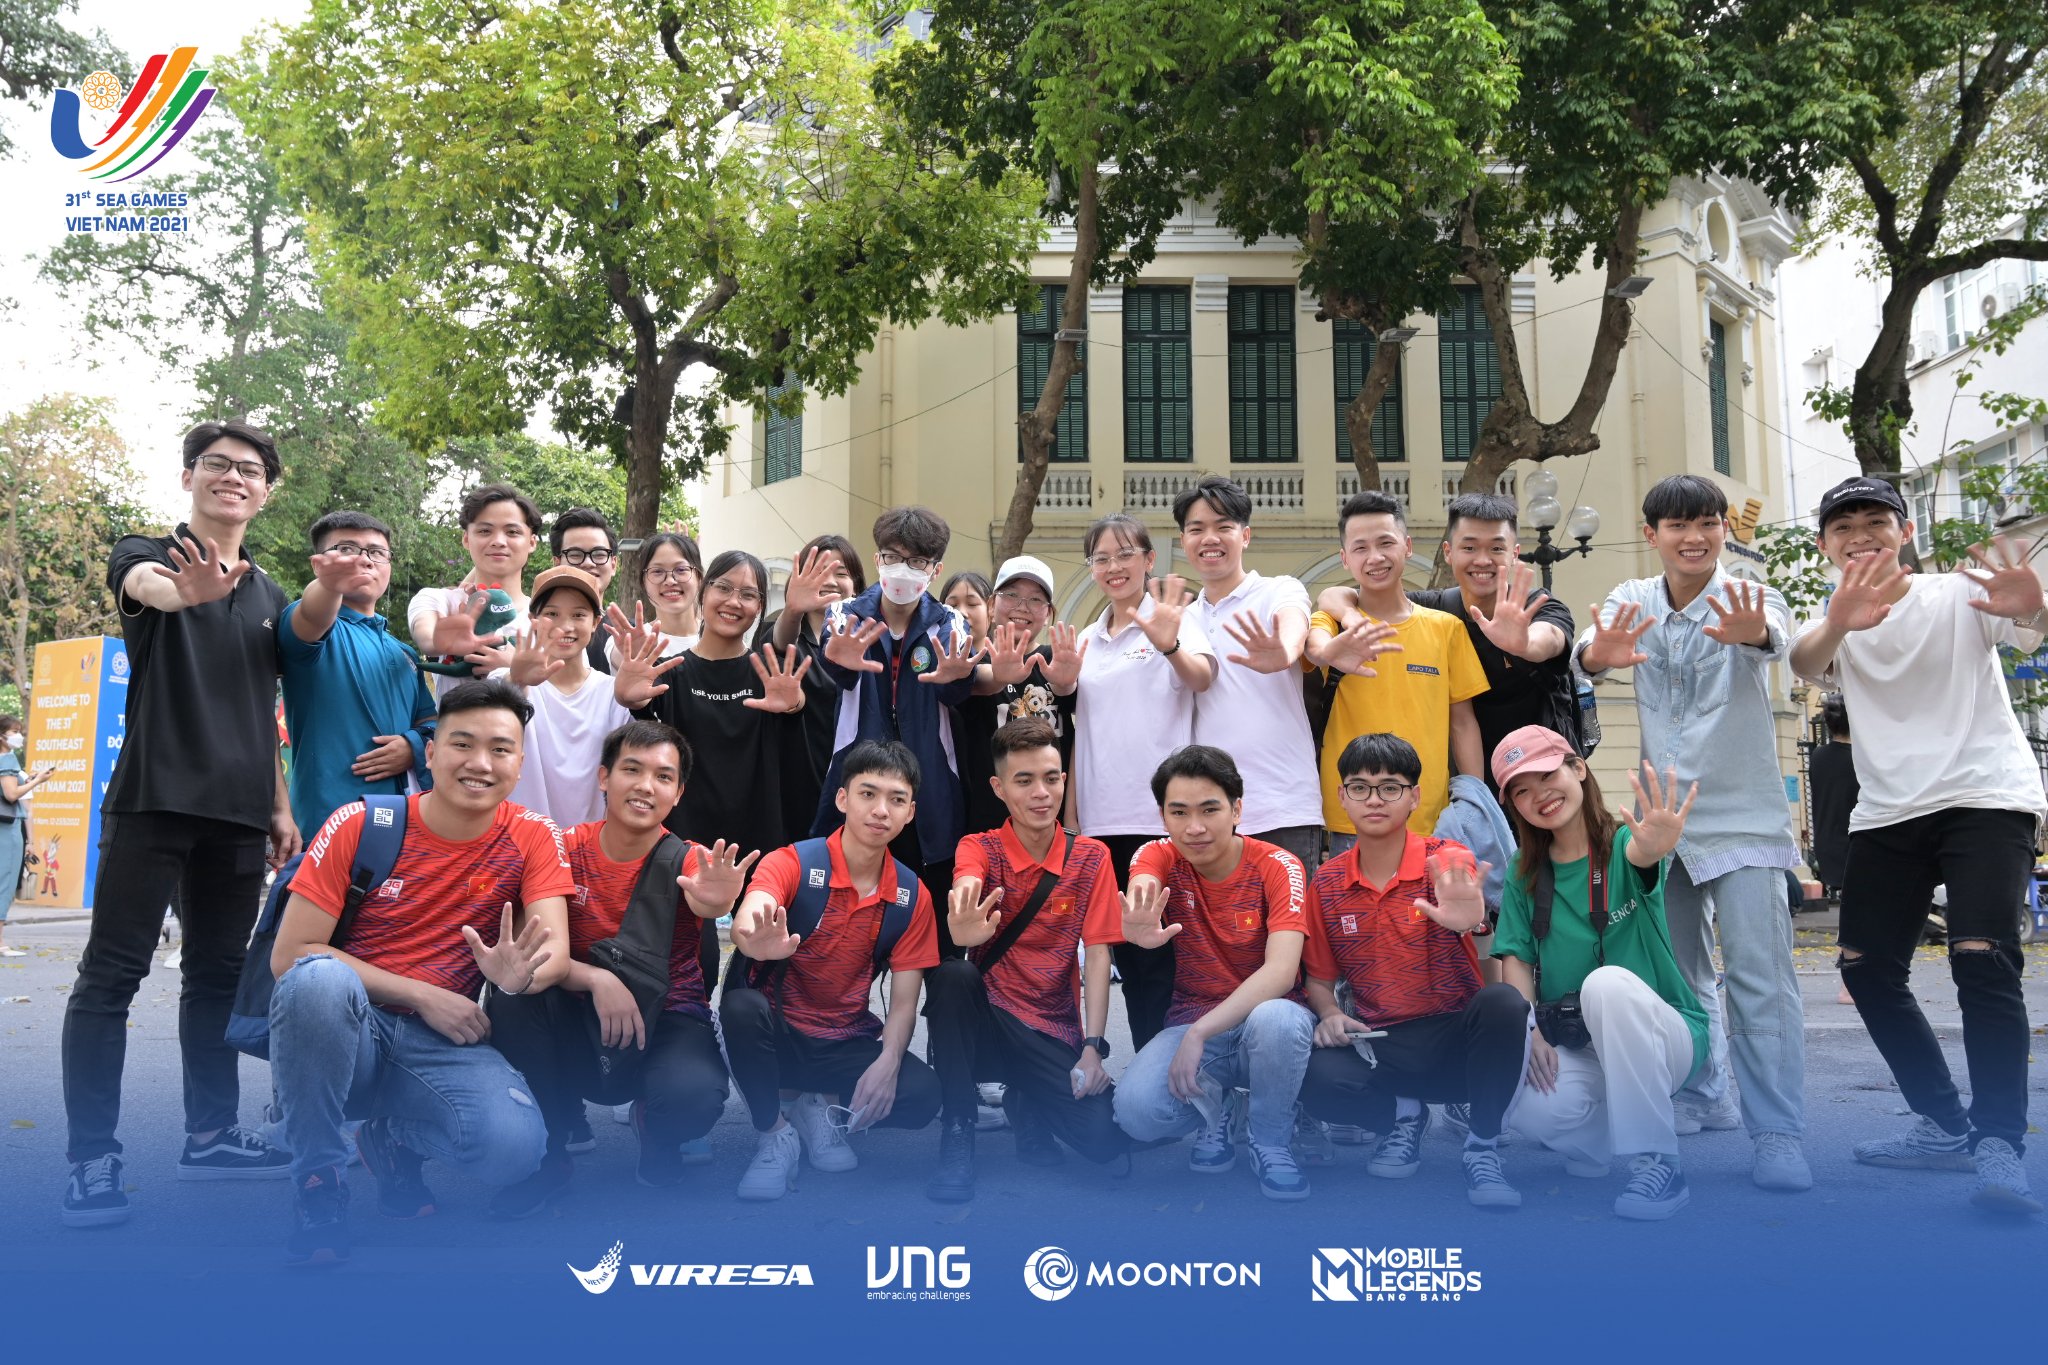 Tuyển Mobile Legends: Bang Bang Việt Nam nhận được sự cổ vũ nhiệt tâm từ fan trước thềm SEA Games 31